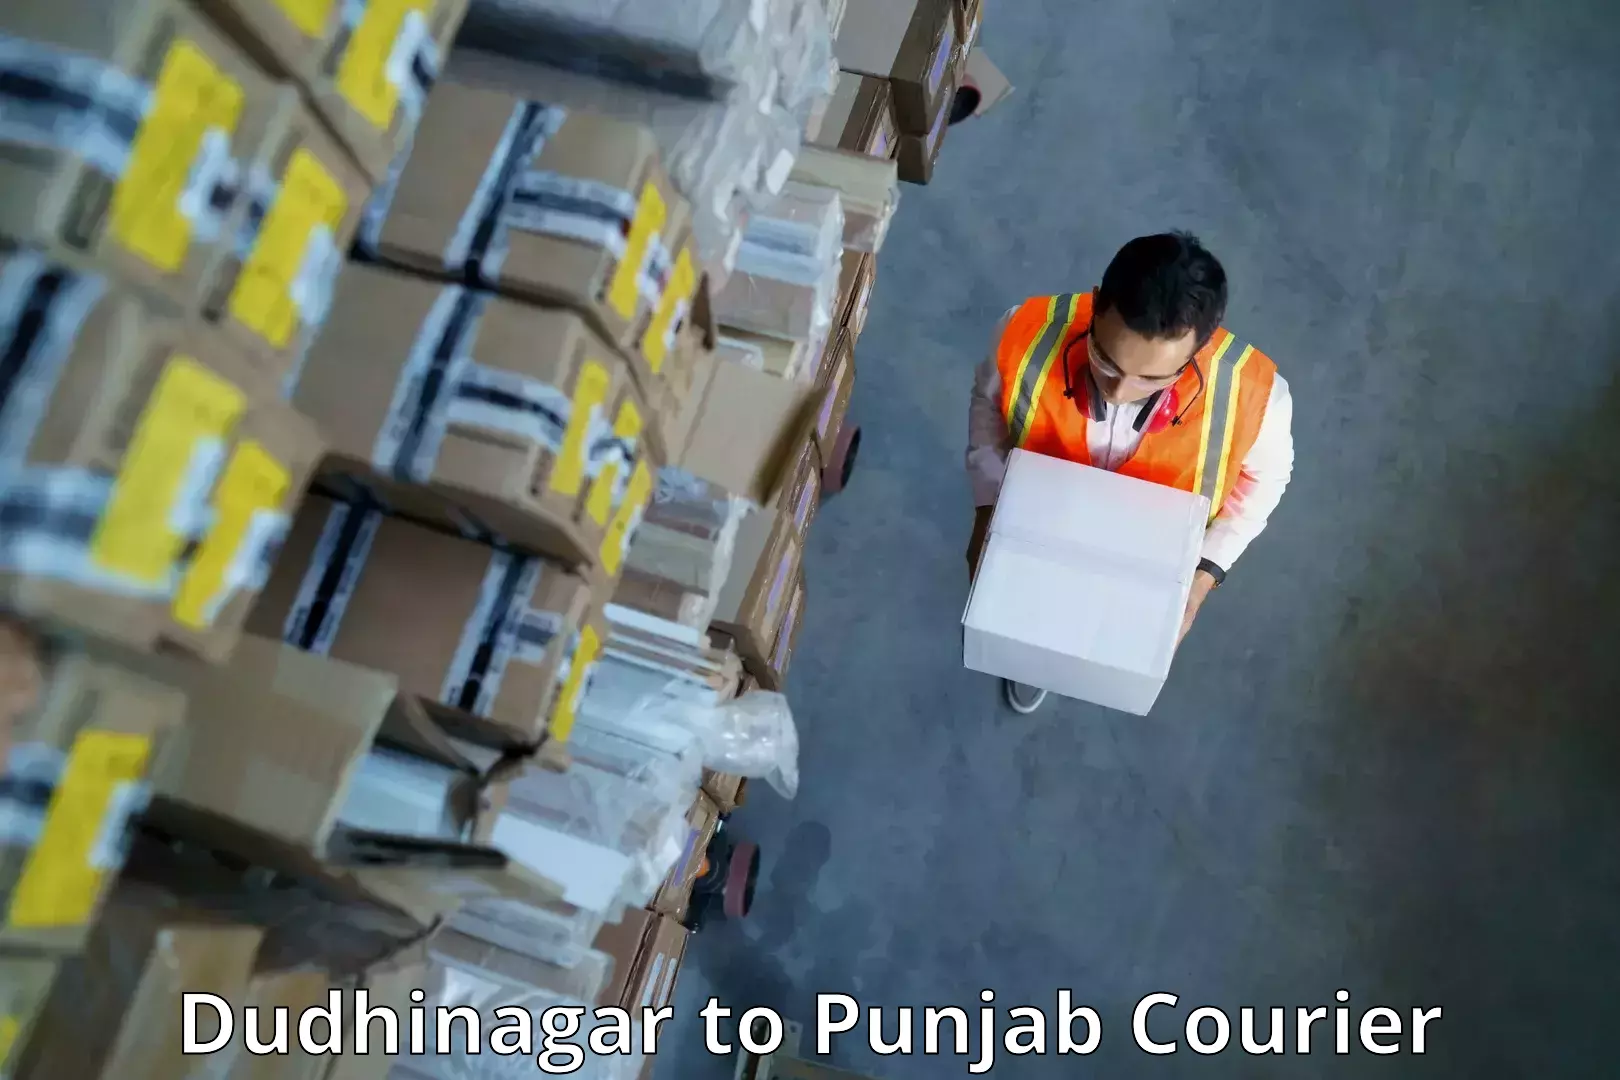 Efficient parcel tracking Dudhinagar to Punjab